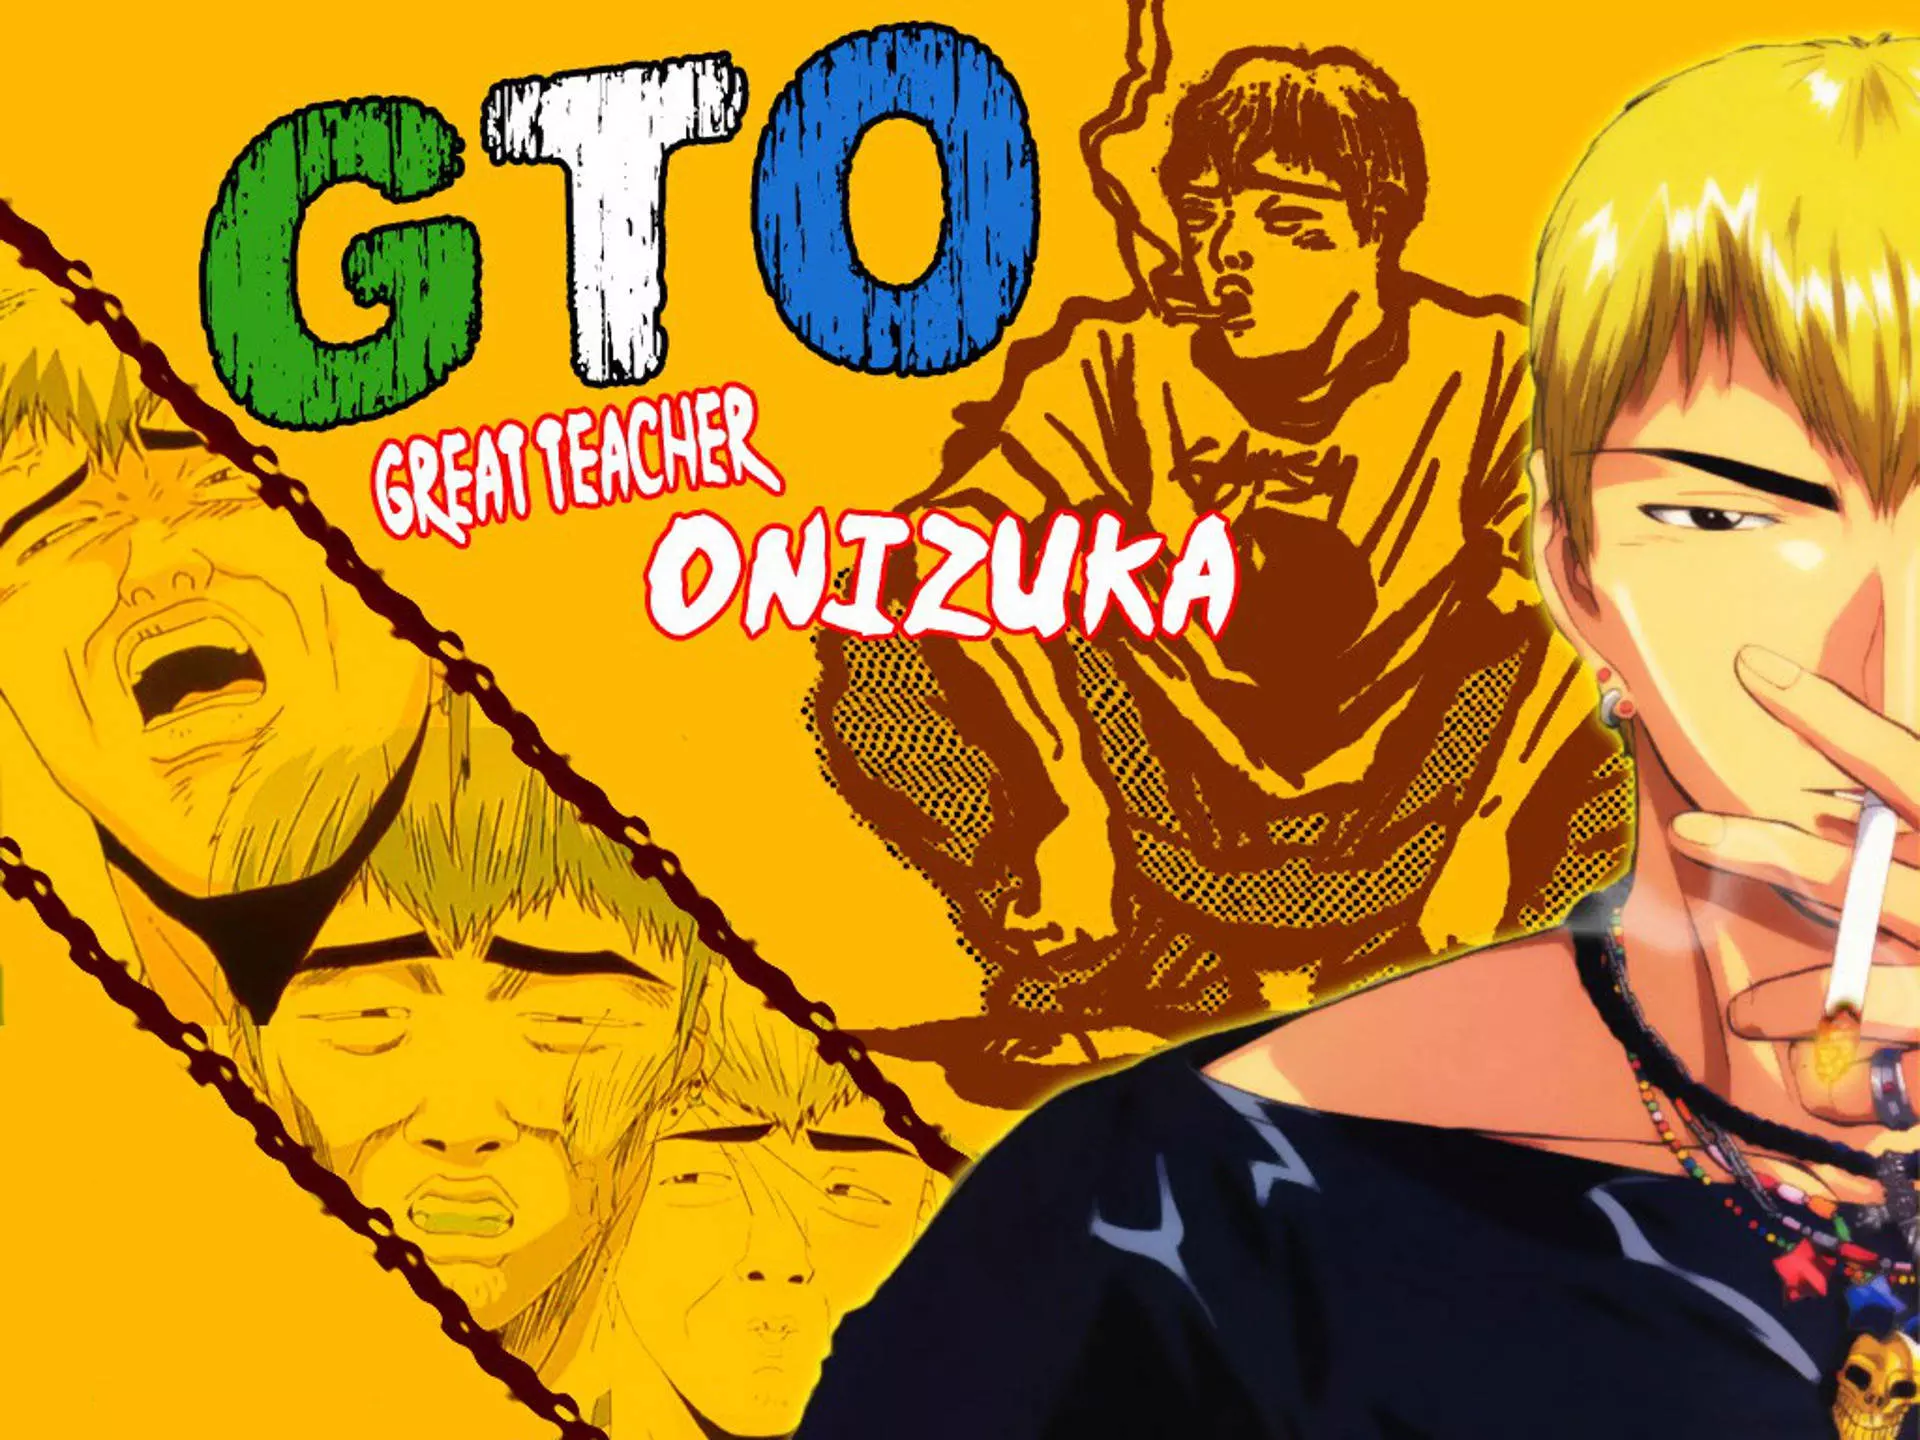 اونیزوکا در انیمه GTO / Great Teacher Onizuka